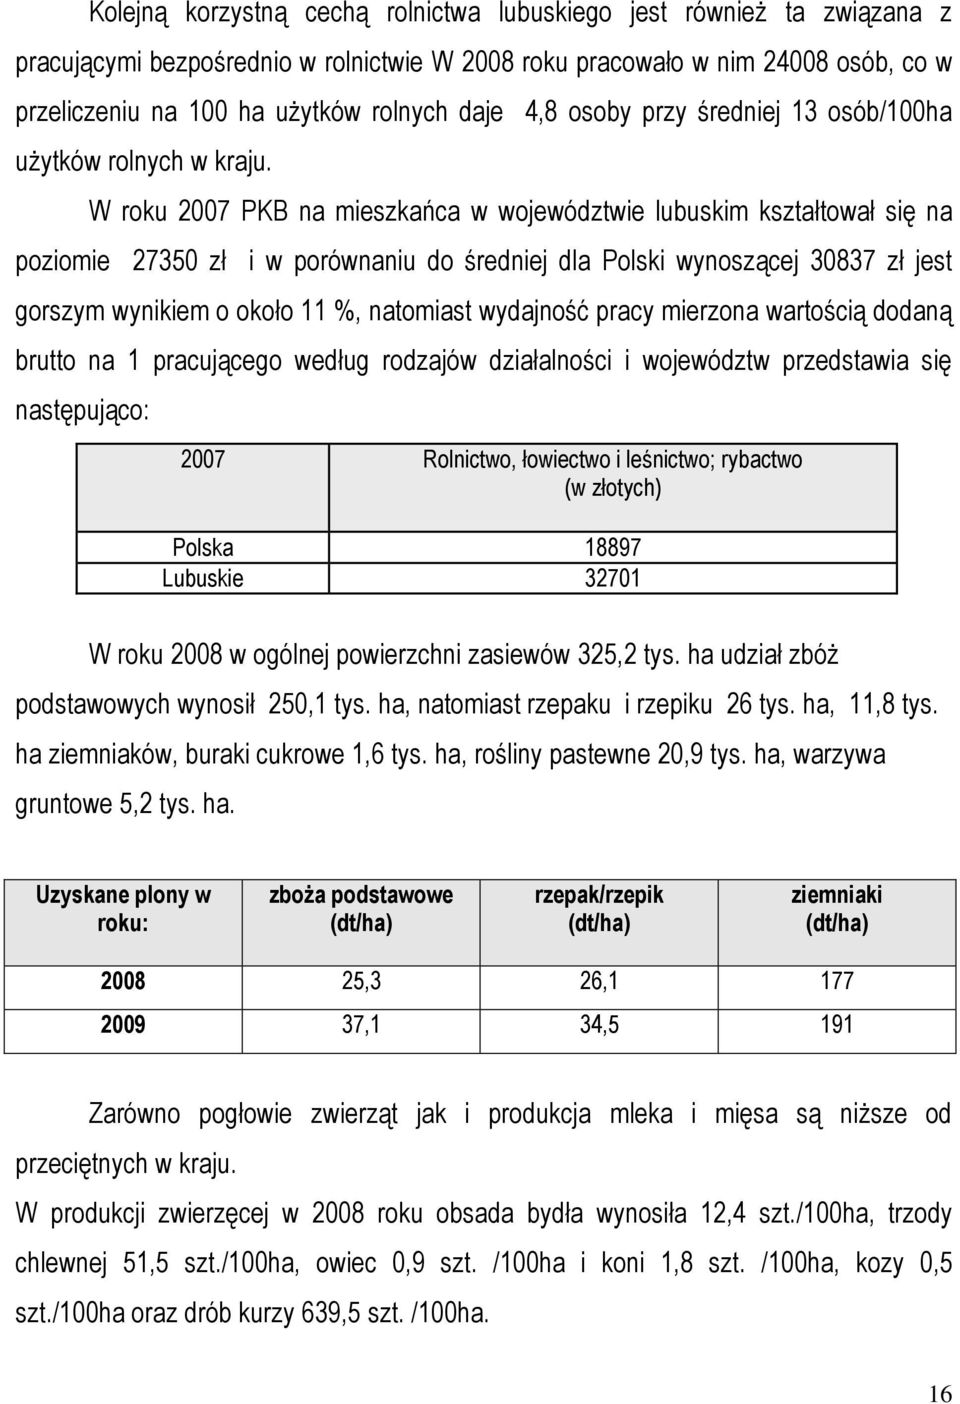 W roku 2007 PKB na mieszkańca w województwie lubuskim kształtował się na poziomie 27350 zł i w porównaniu do średniej dla Polski wynoszącej 30837 zł jest gorszym wynikiem o około 11 %, natomiast